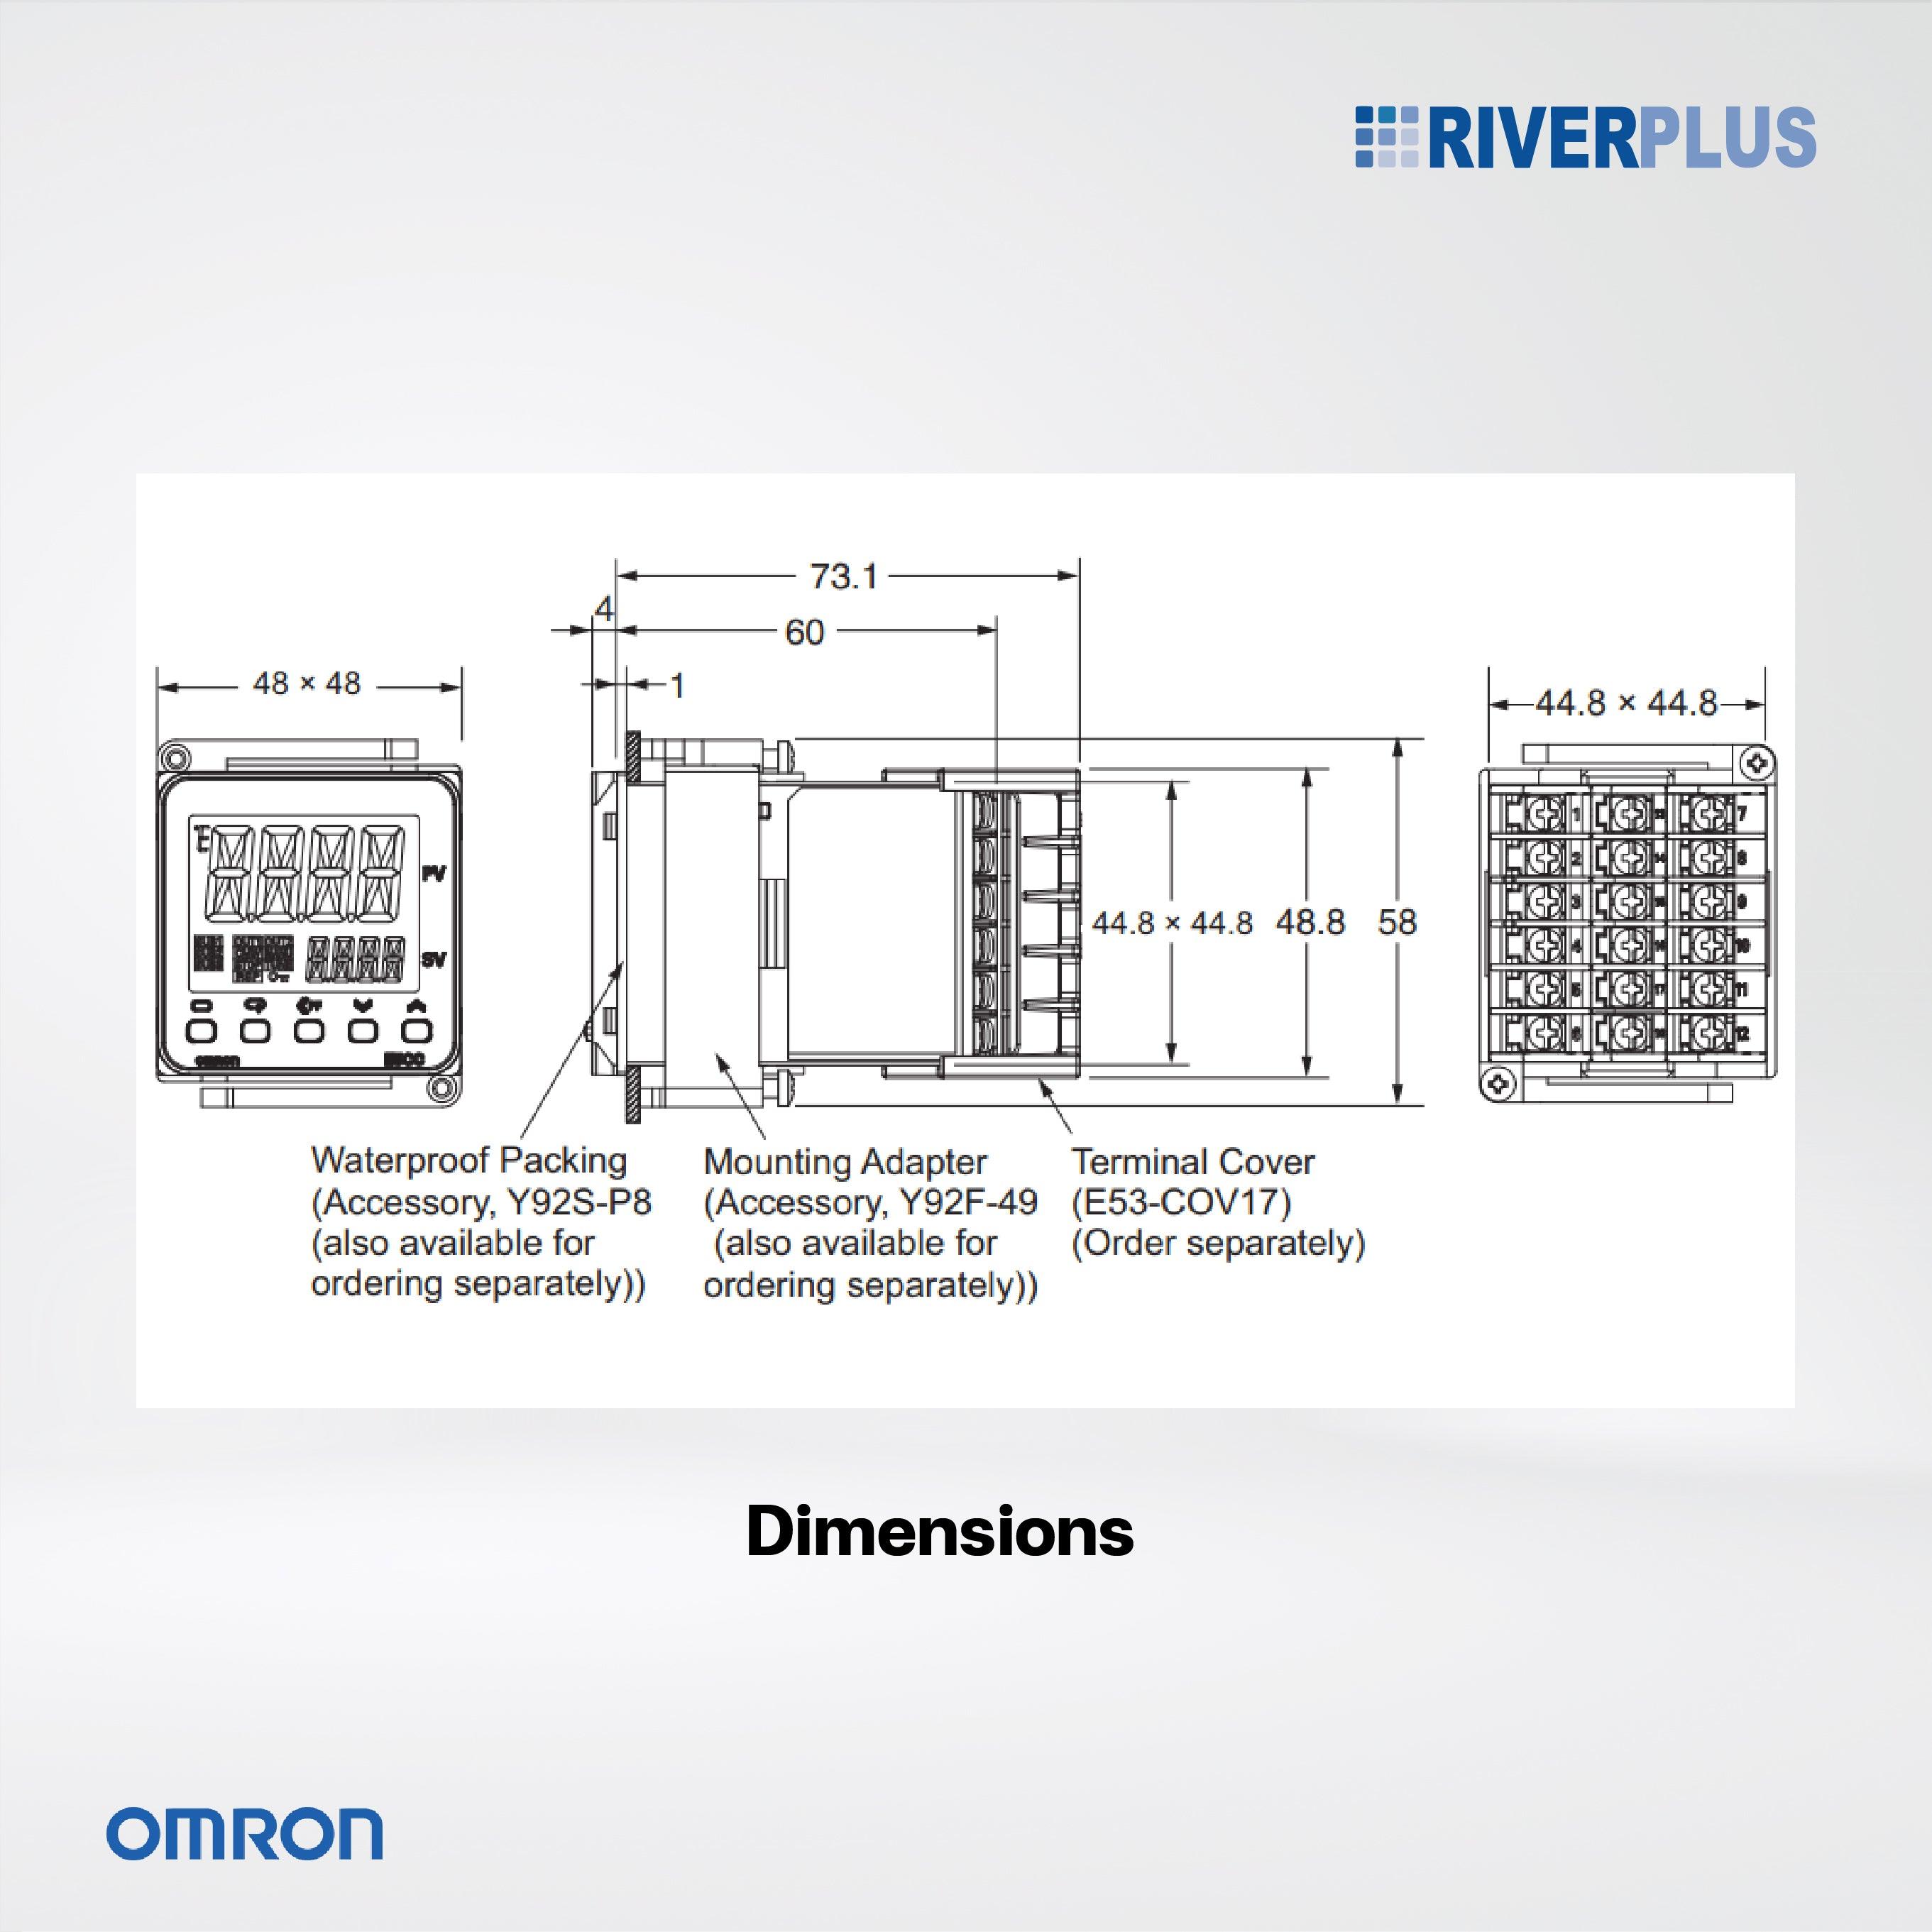 E5CC-RX3A5M-000 OMI Temperature controller, 1/16 DIN (48x48 mm), 1 Relay output, 3 AUX, 100-240 VAC - Riverplus